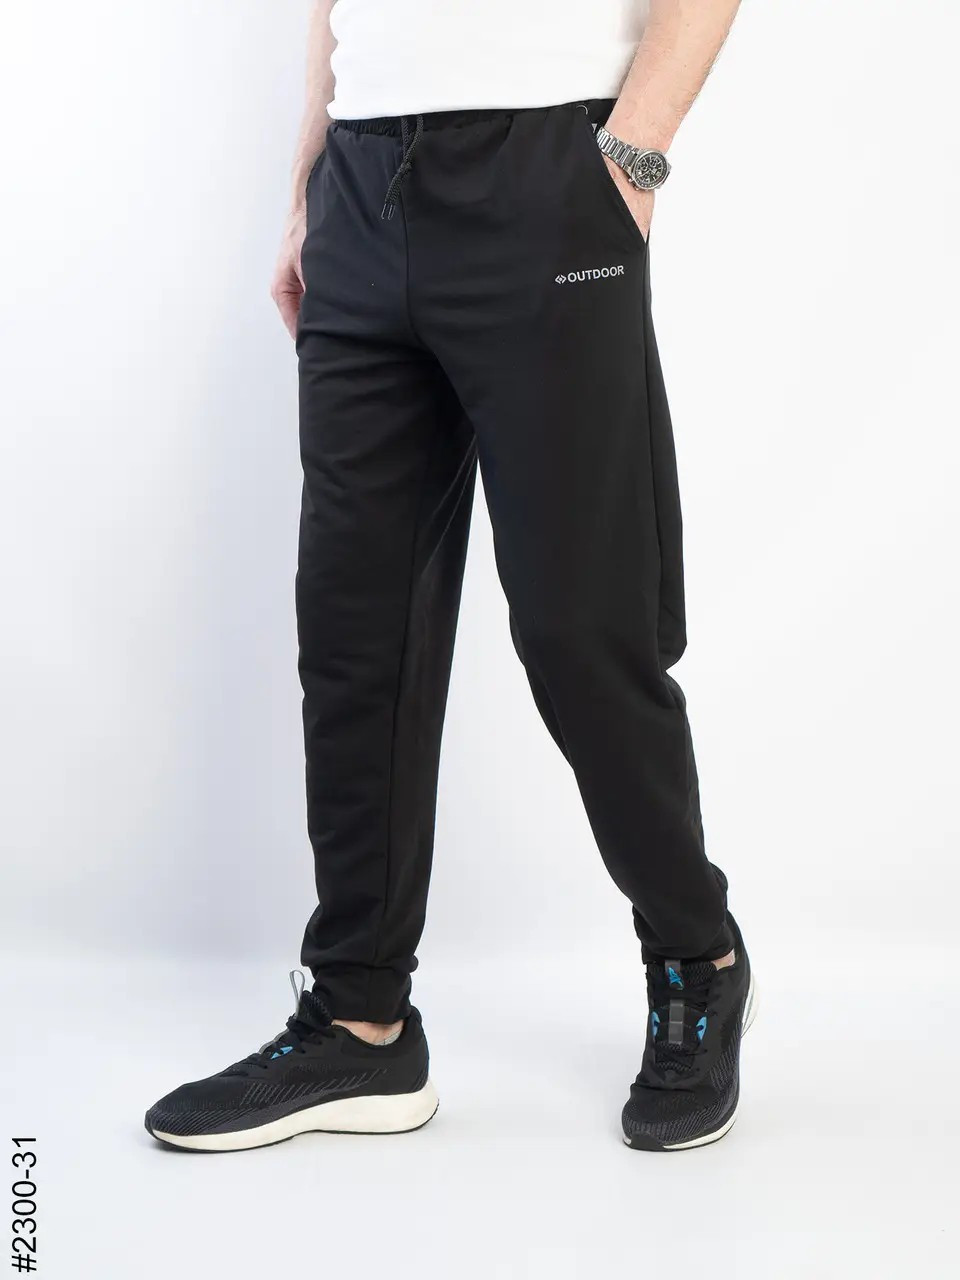 Чоловічі стильні спортивні штани двонитка виробництво Україна